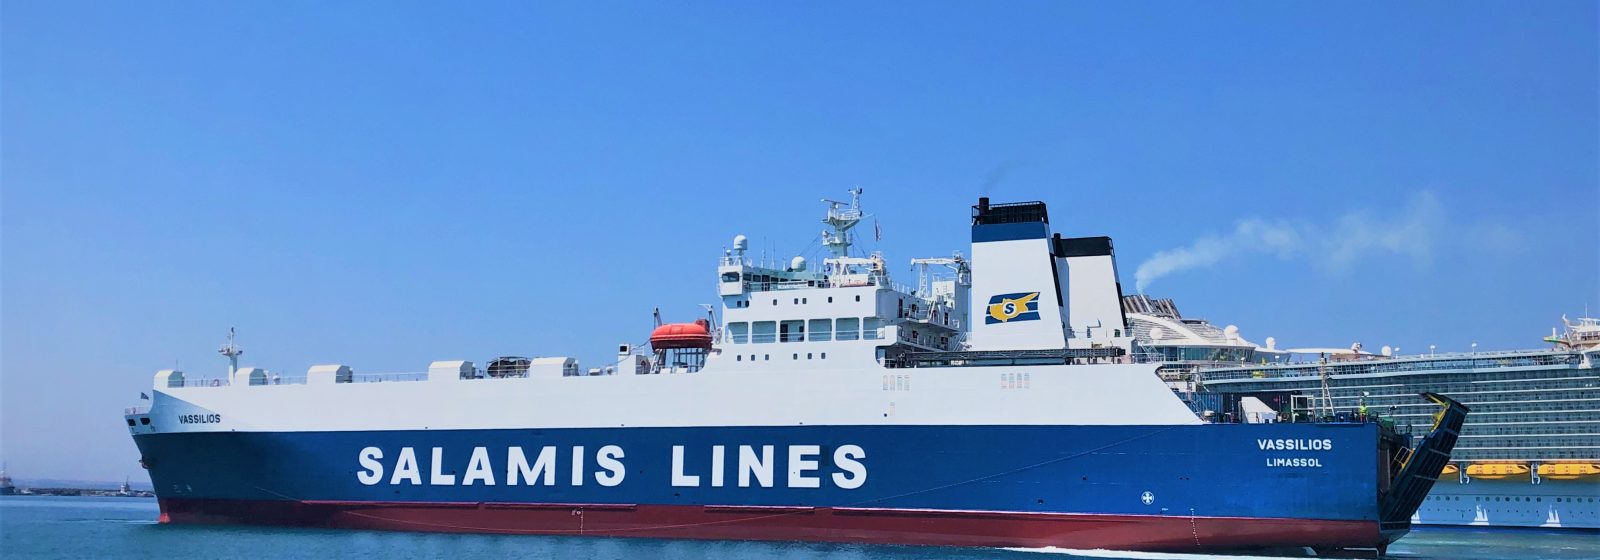 Het roroschip 'Vasilios' van Salamis Lines in Limassol